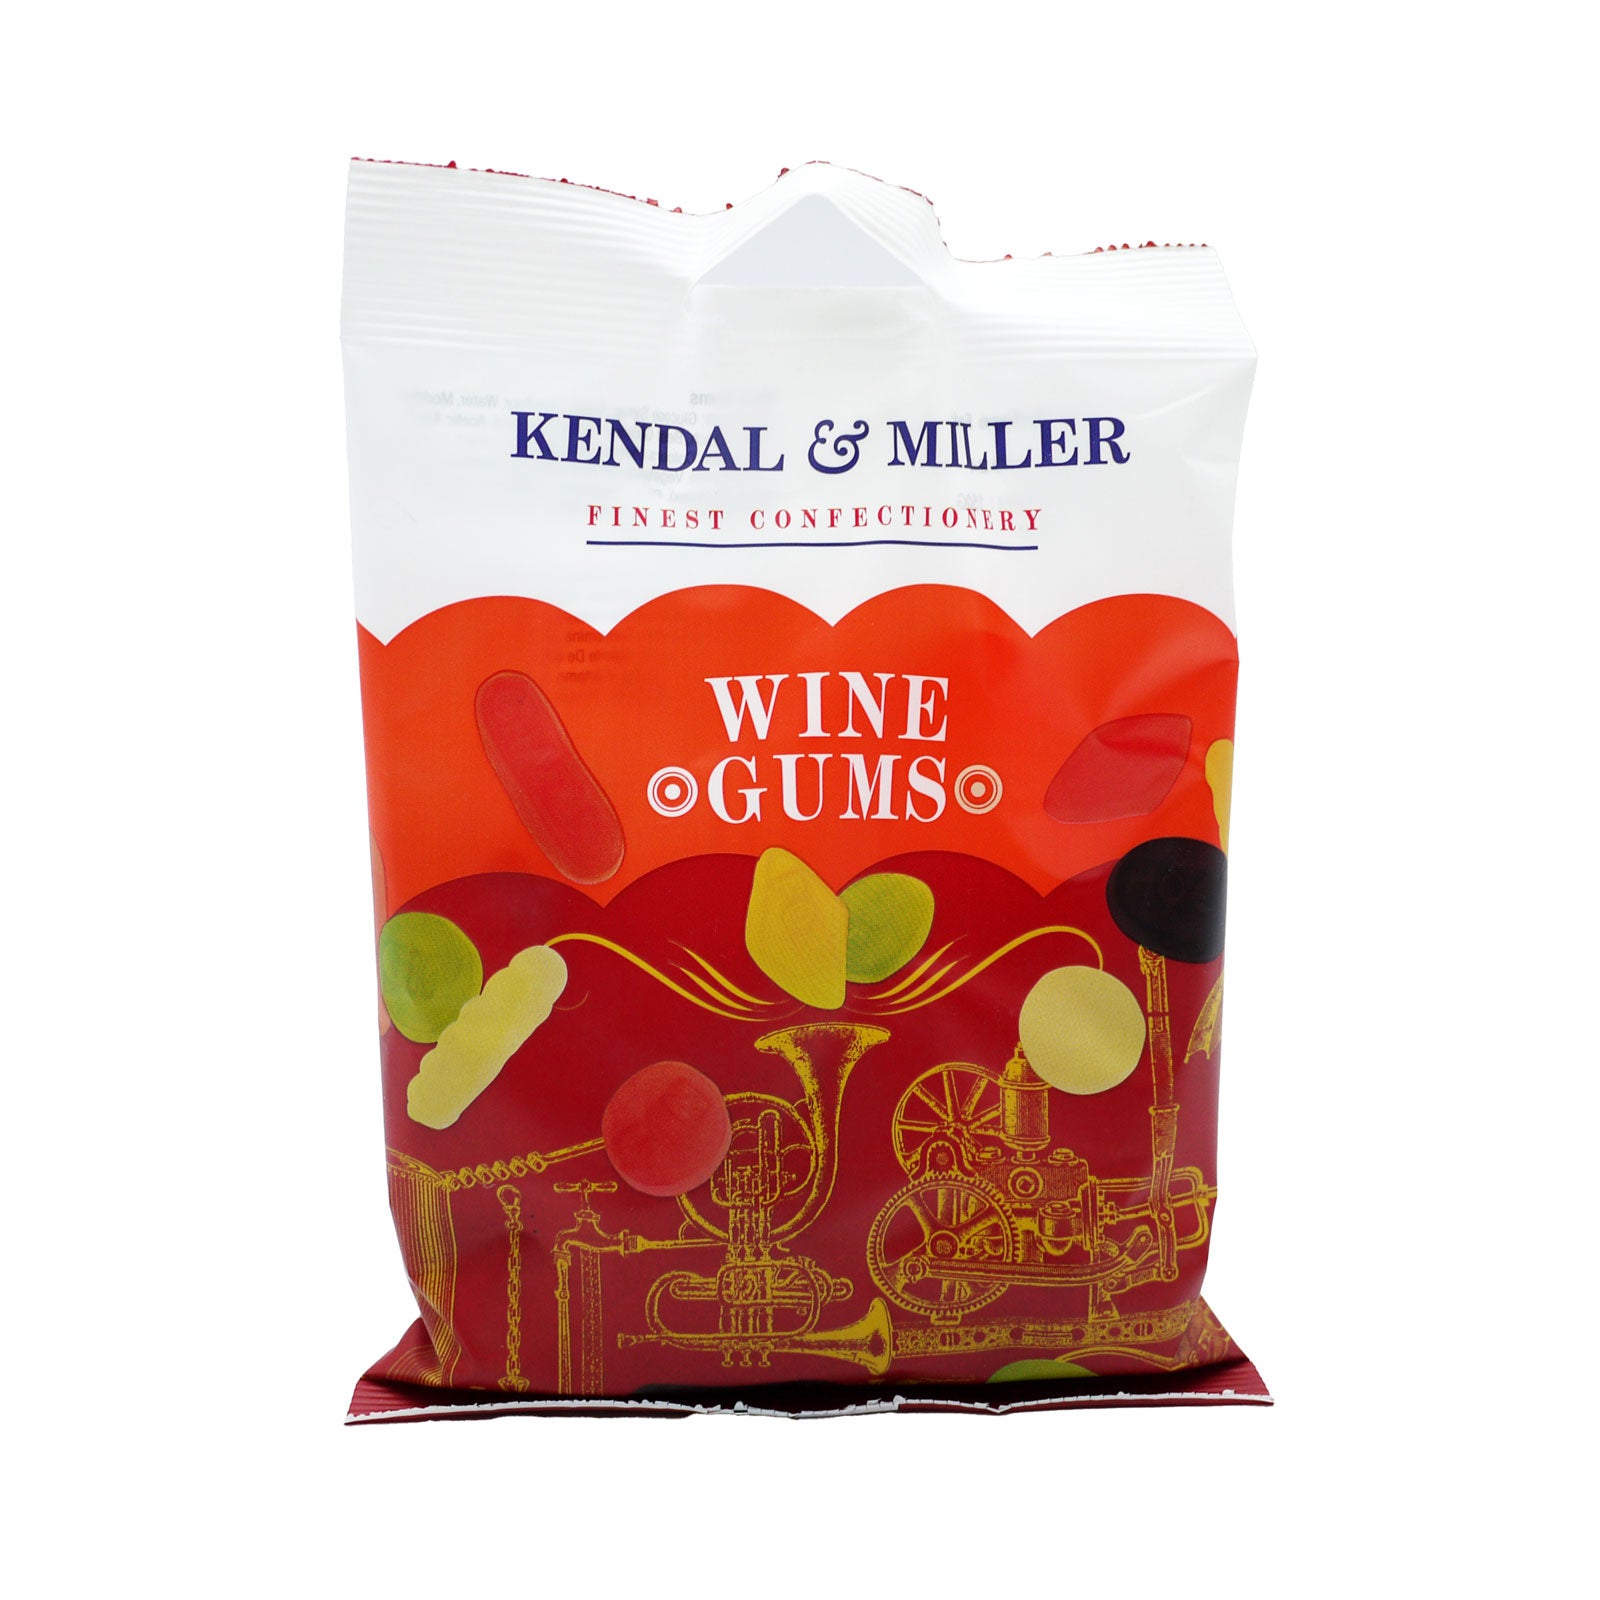 Kendal & Miller Wine Gums Bag 140g